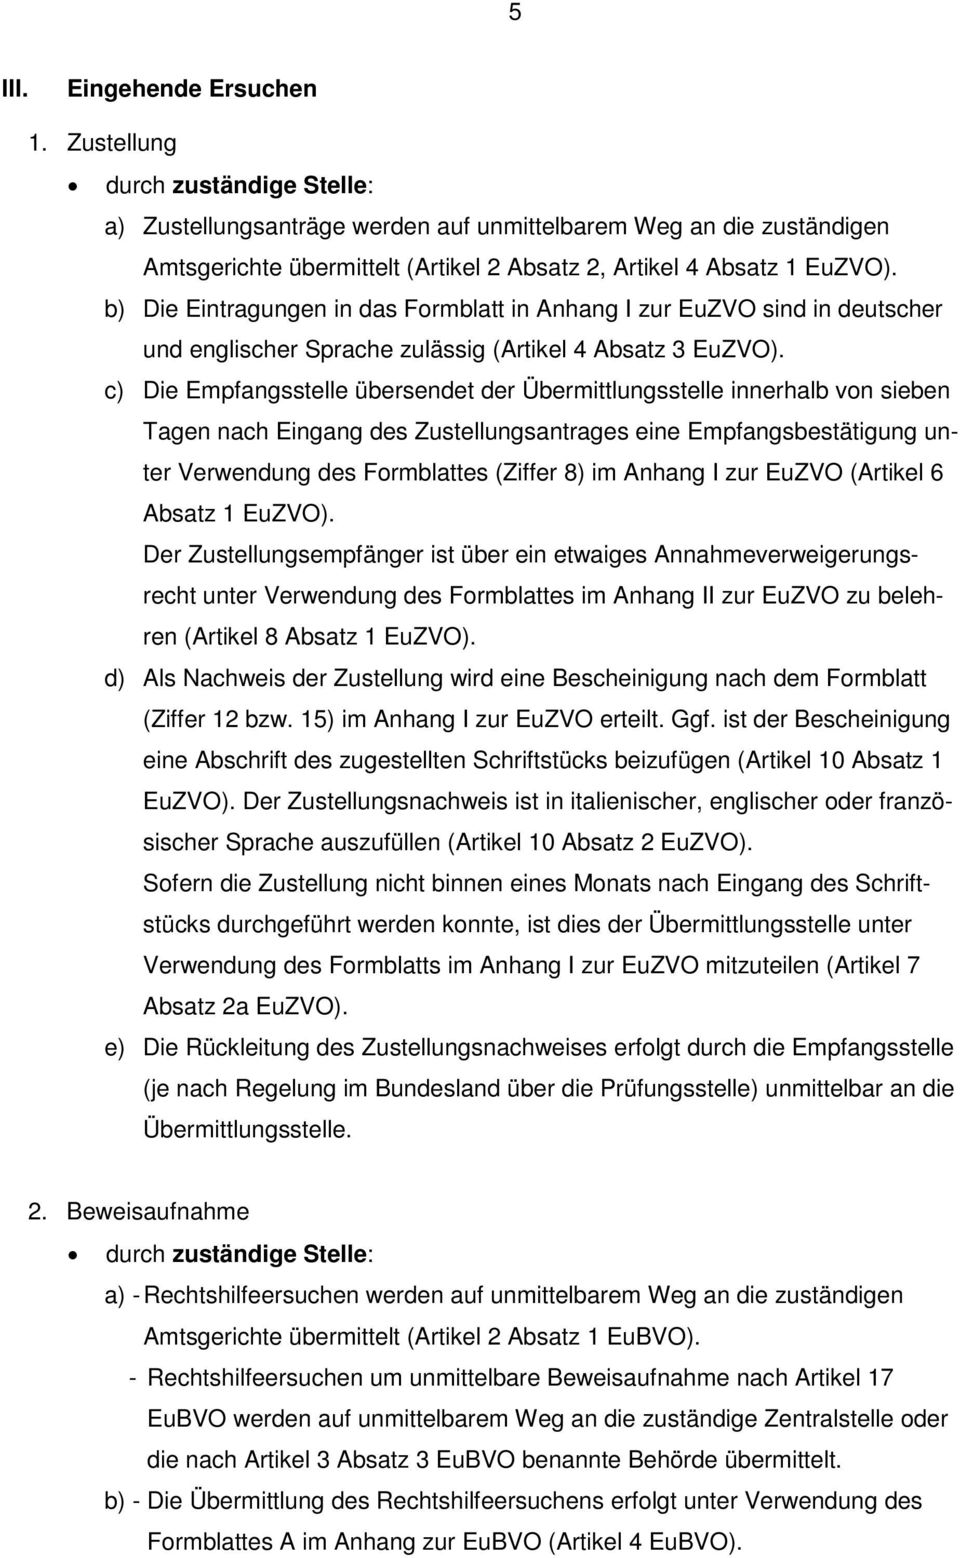 b) Die Eintragungen in das Formblatt in Anhang I zur EuZVO sind in deutscher und englischer Sprache zulässig (Artikel 4 Absatz 3 EuZVO).